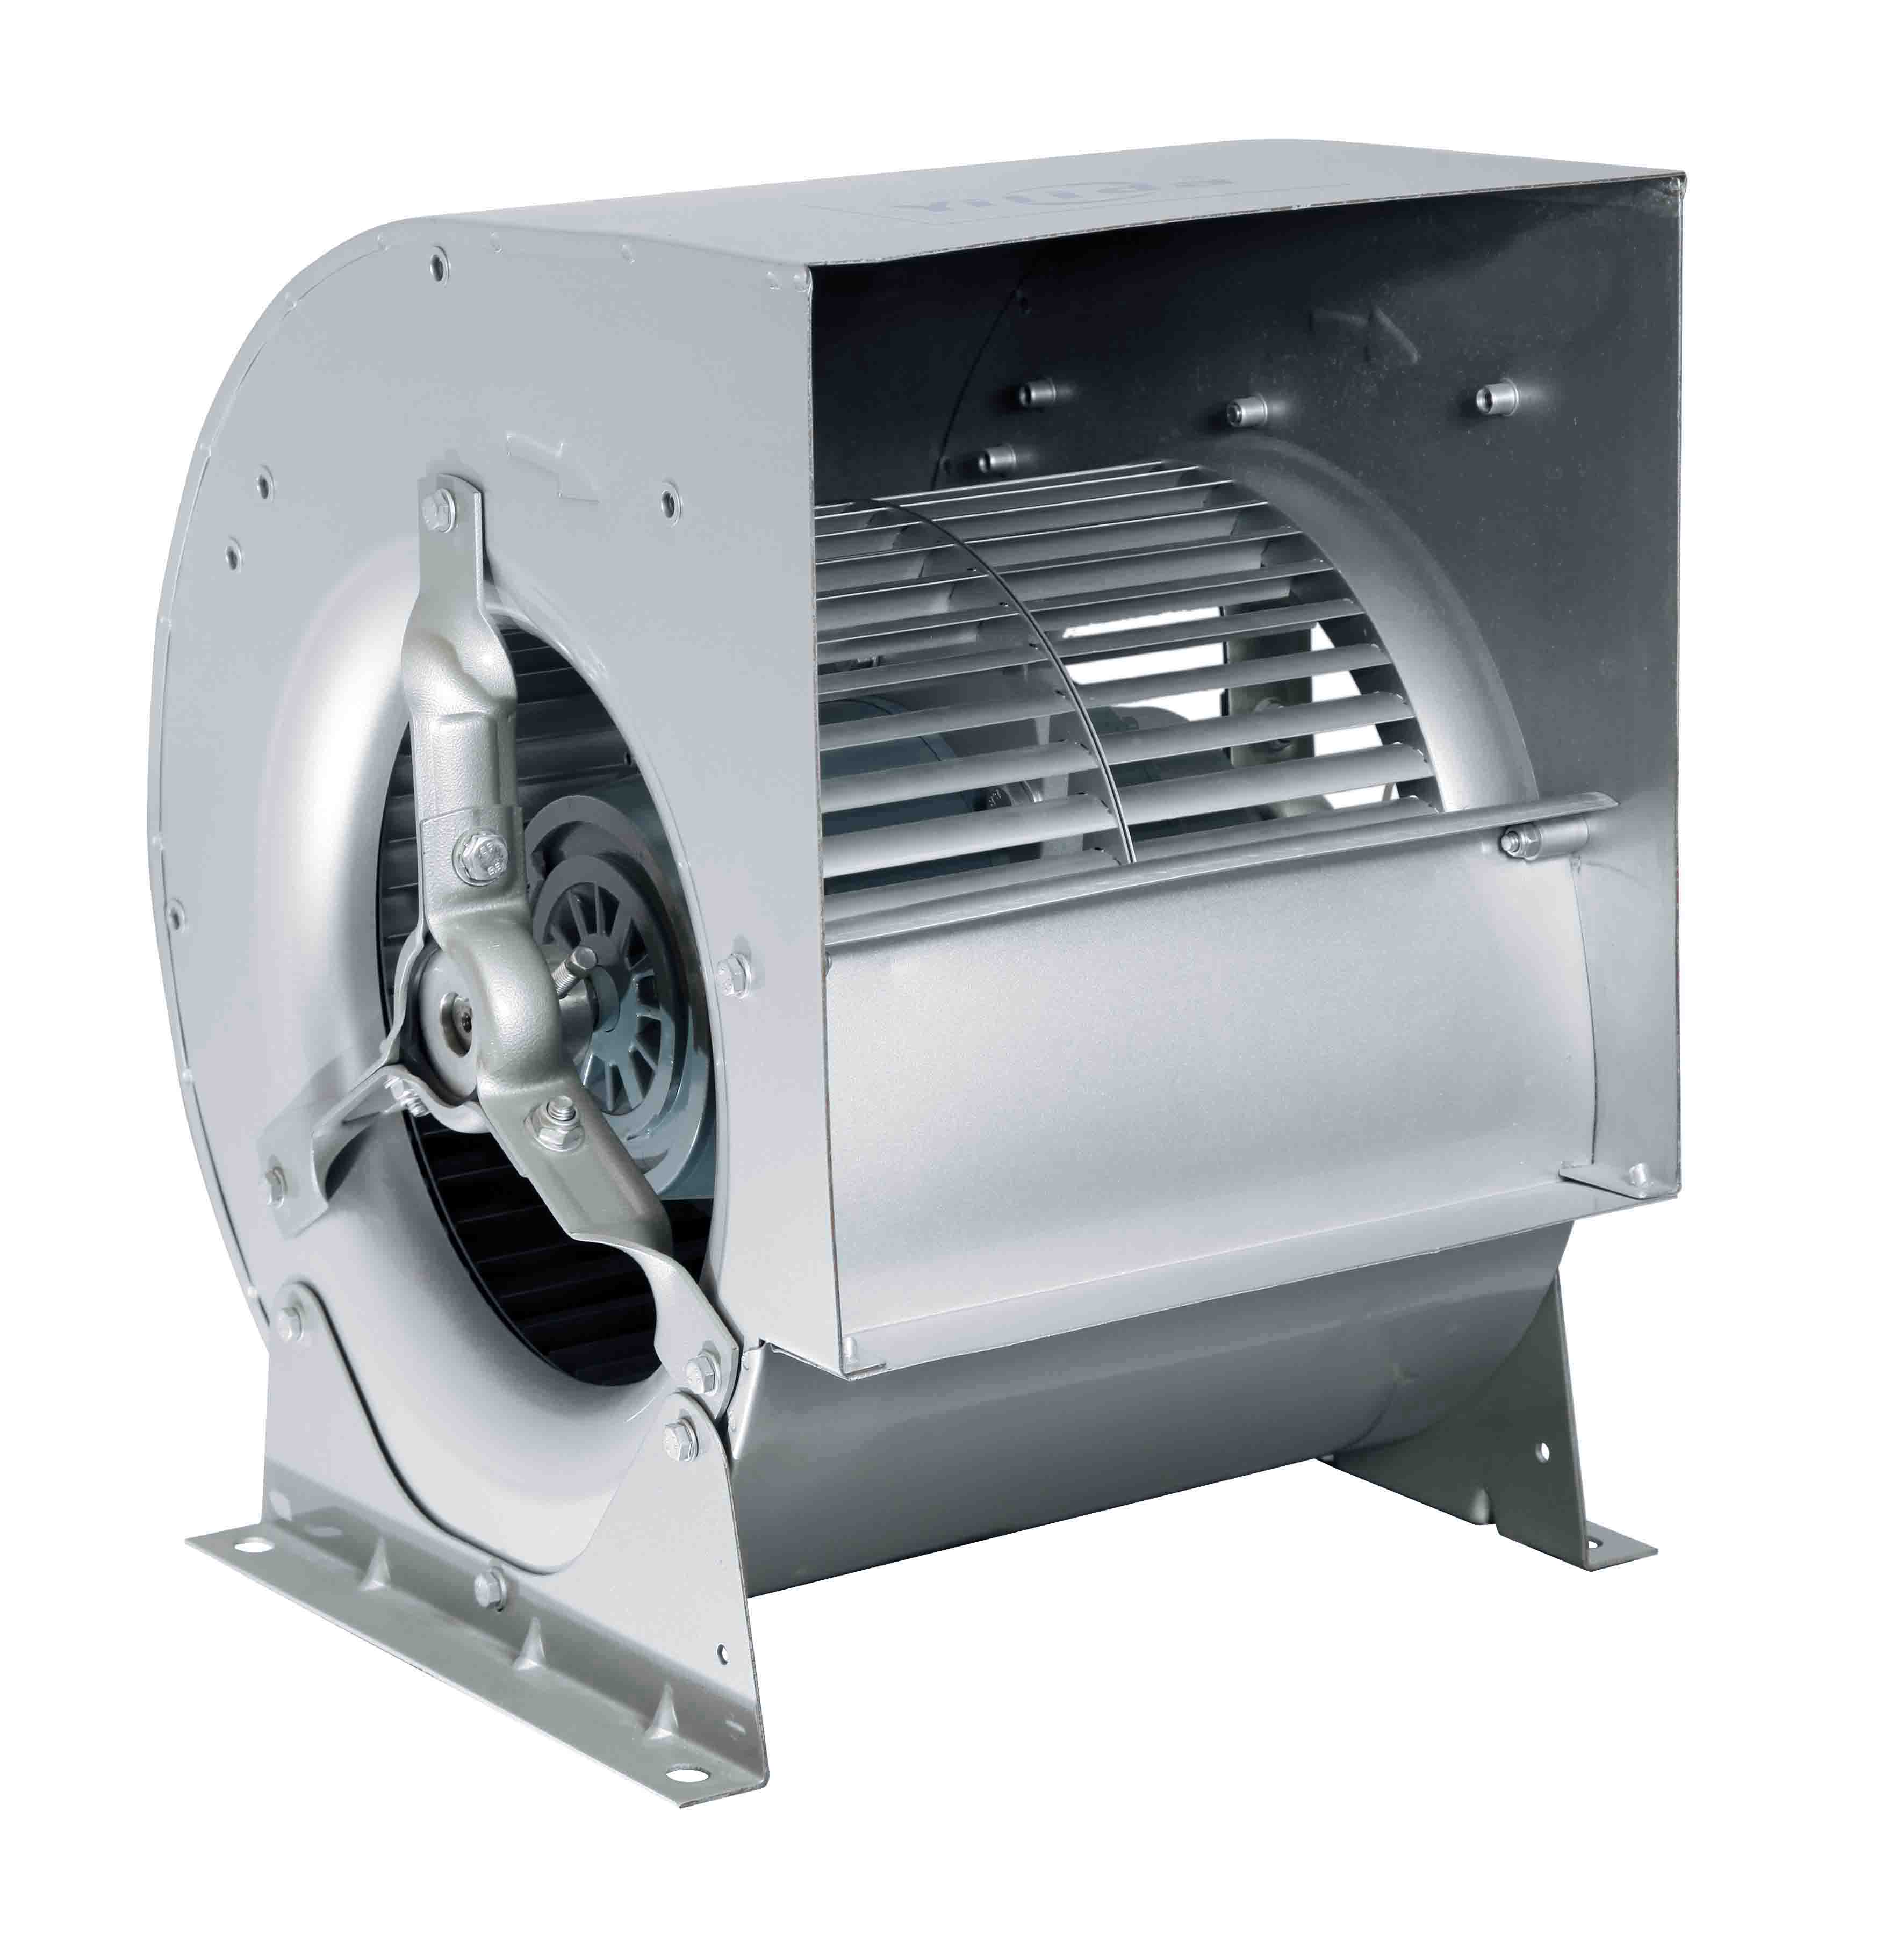 Kiváló minőségű előremenő centrifugális ventilátor kettős bemeneti ventilátor